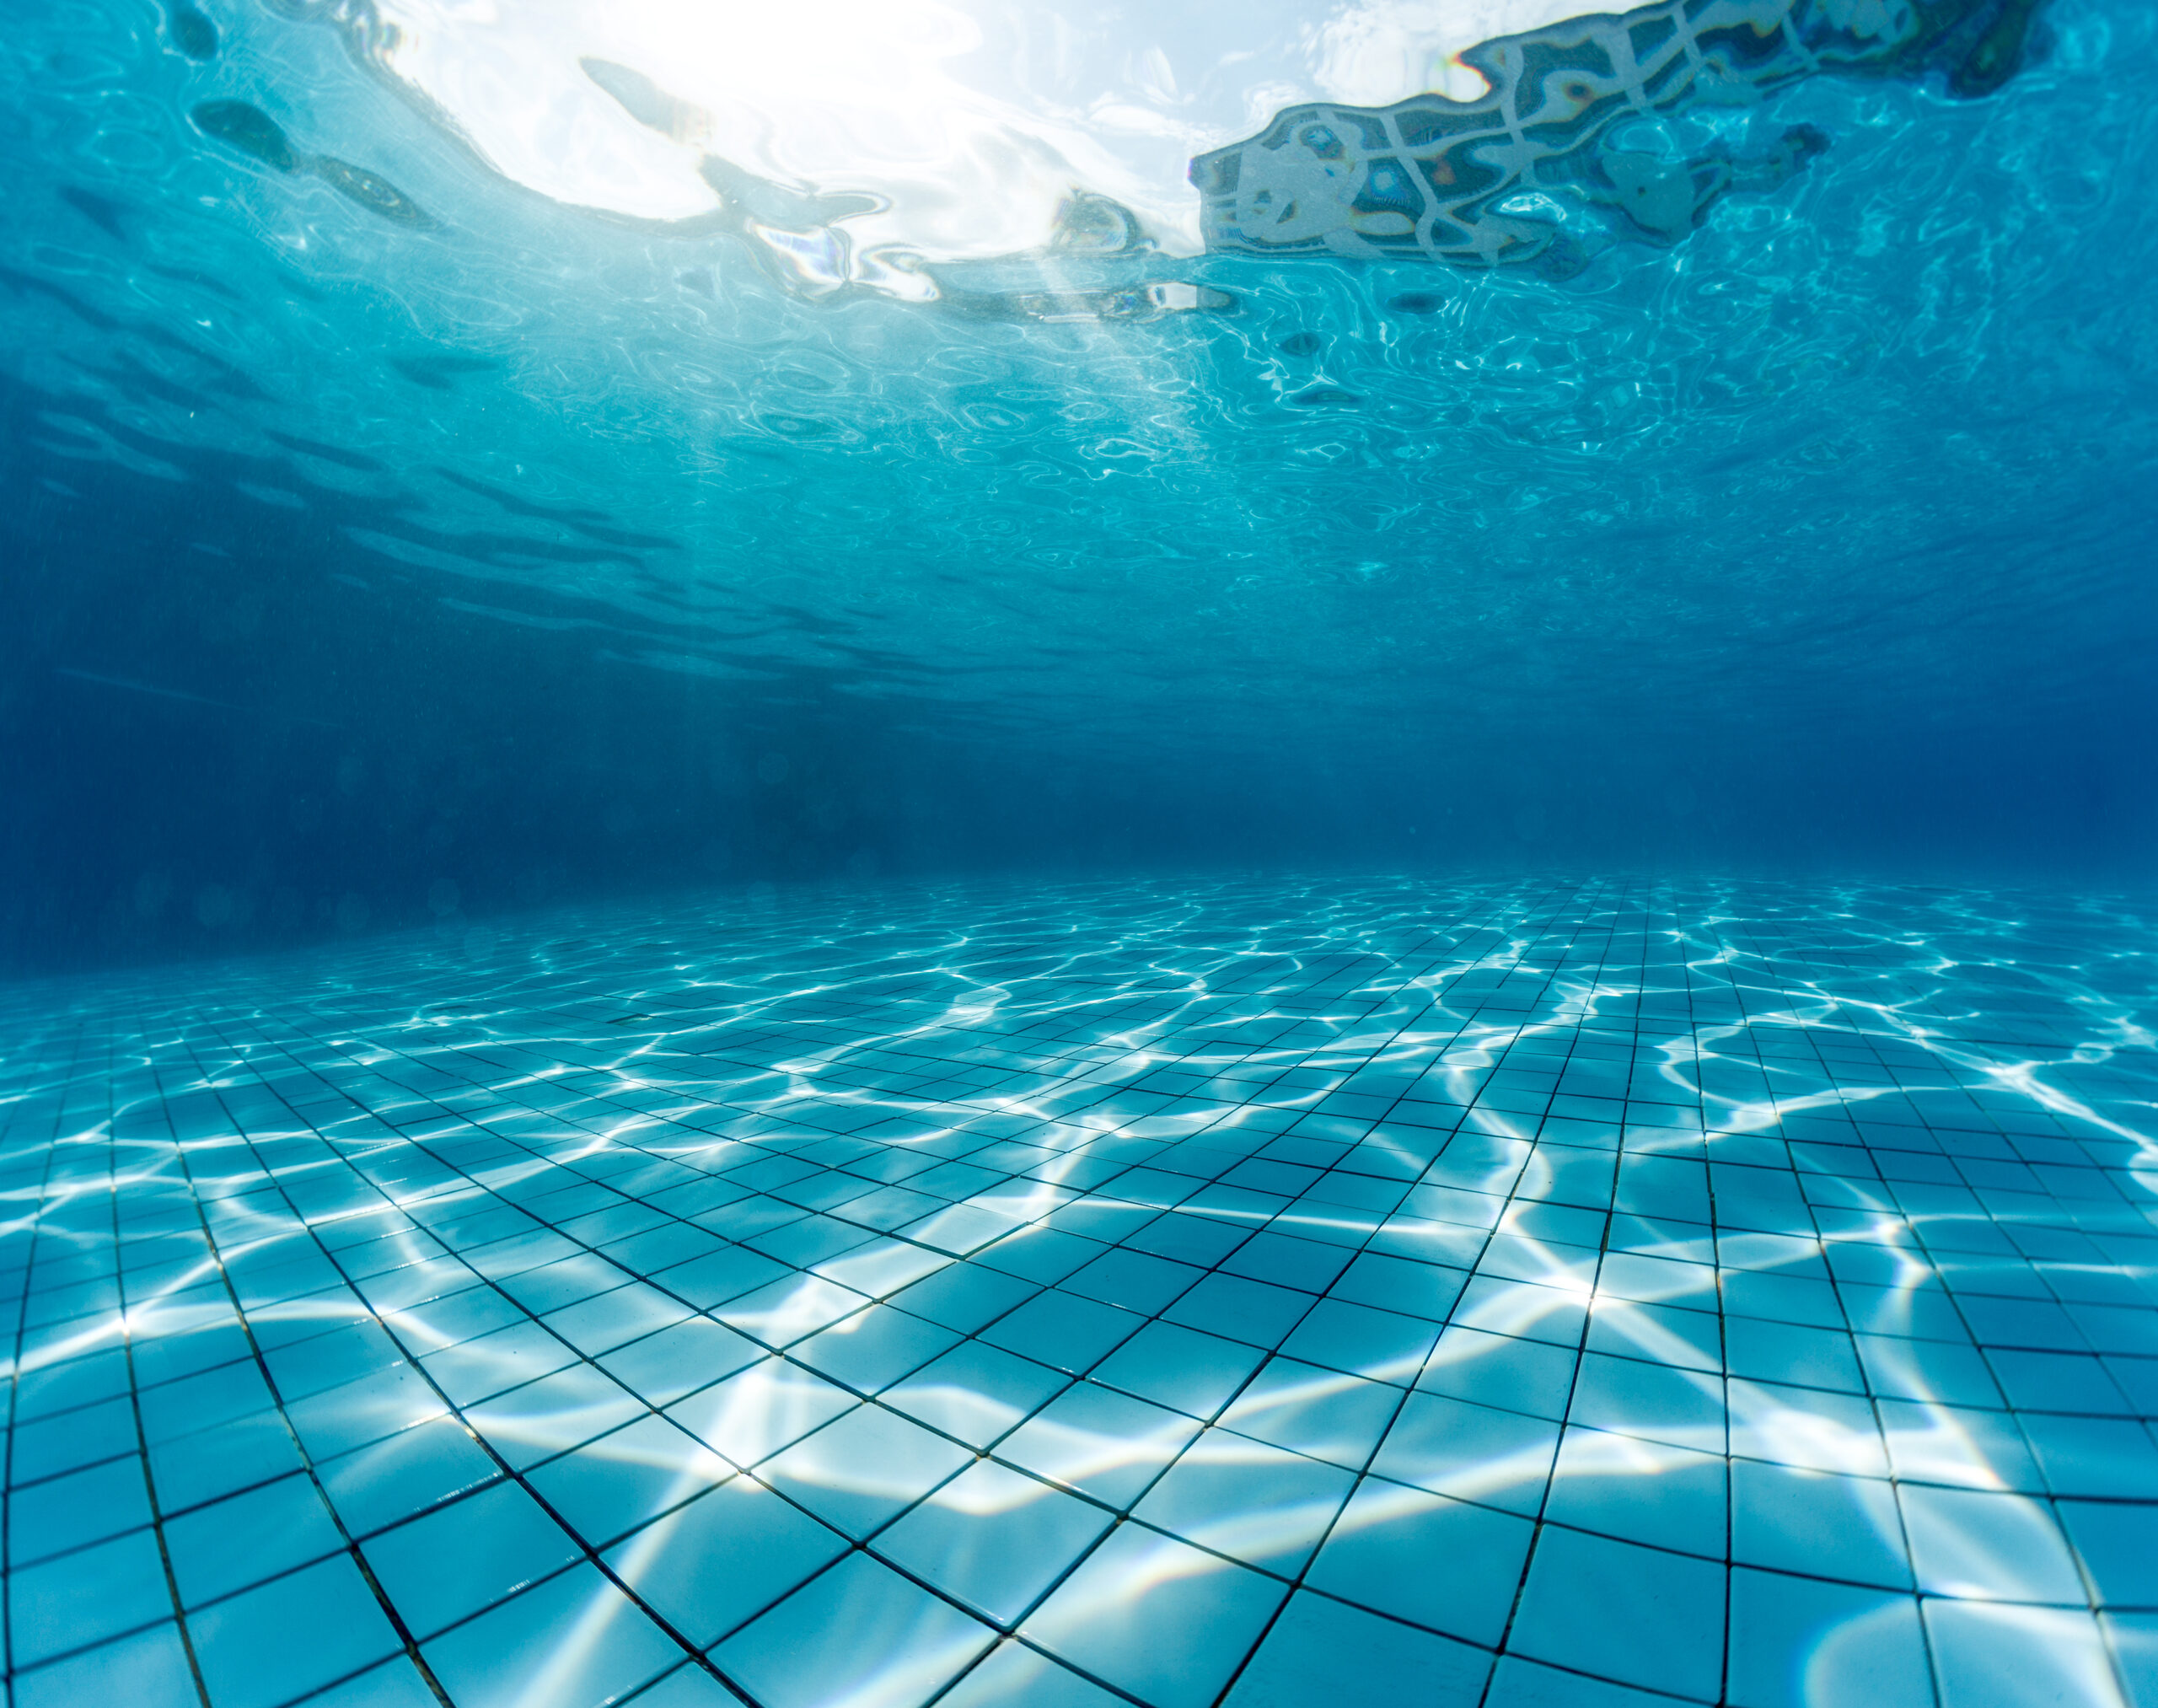 An underwater shot taken in a pool